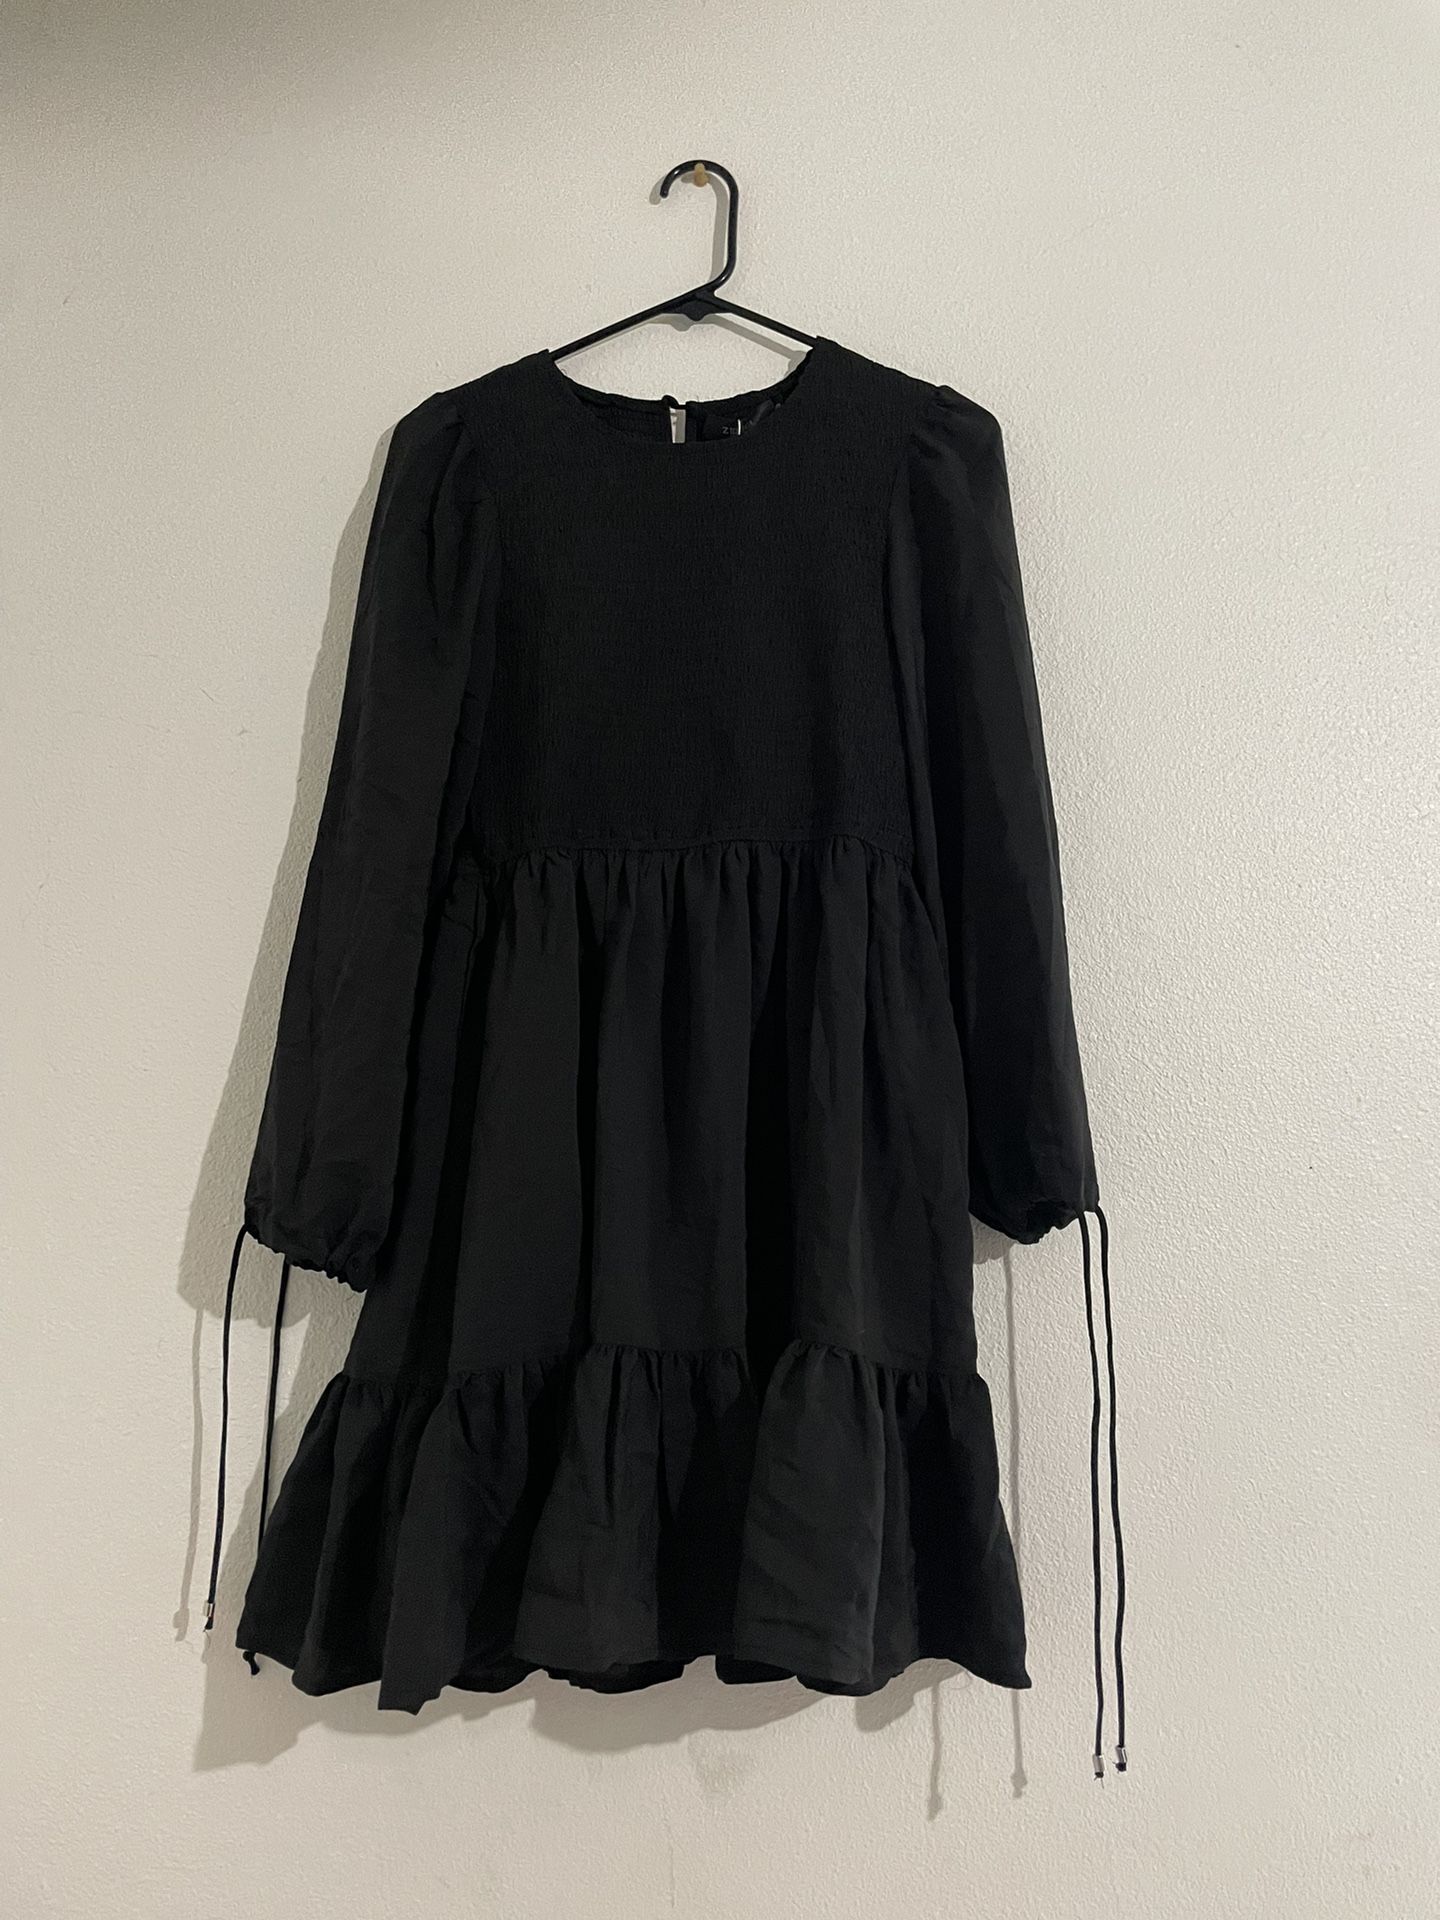 Zesica Black Long Sleeve Dress